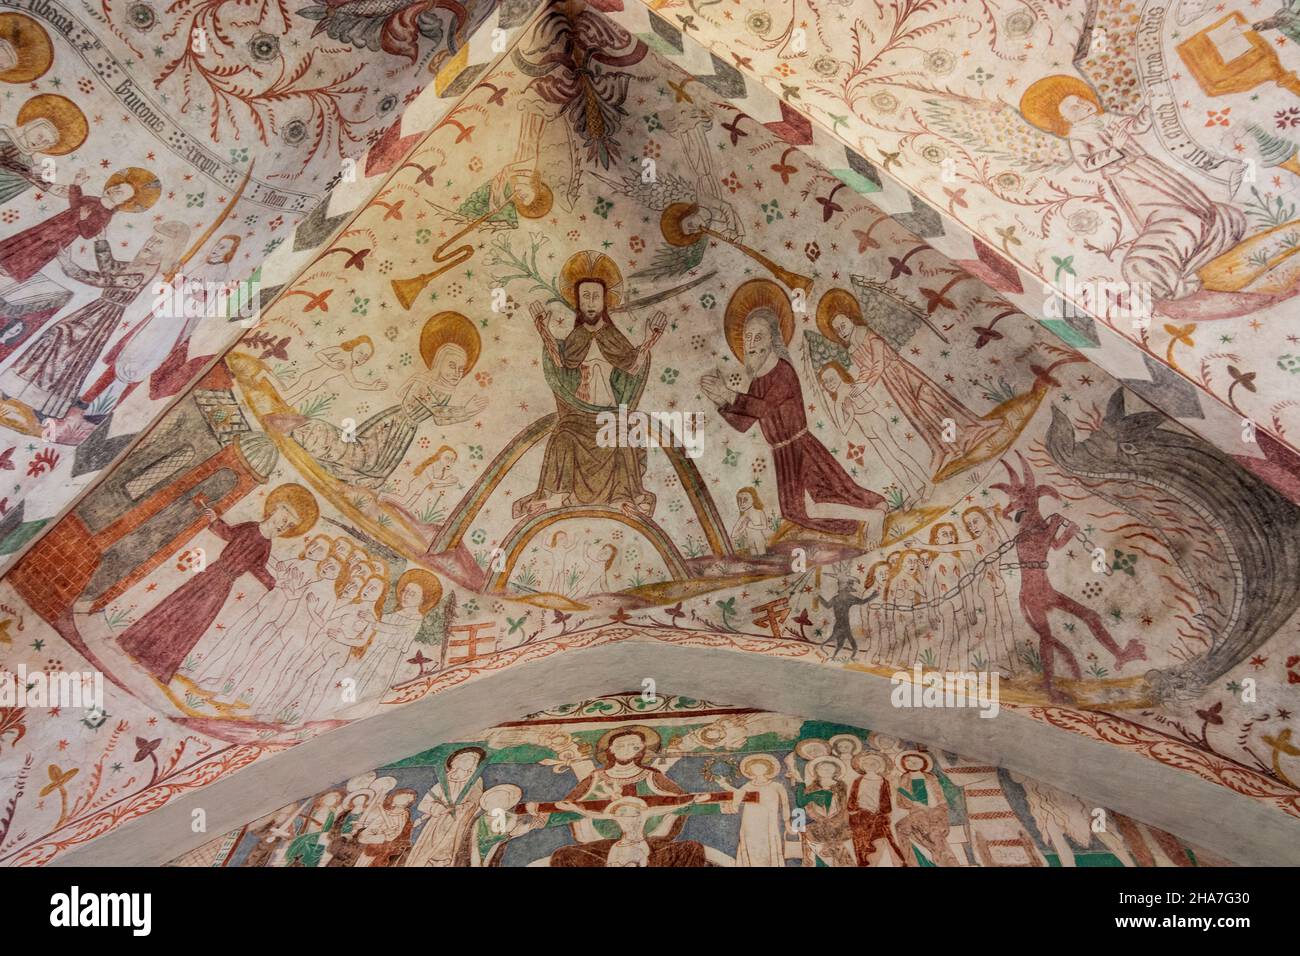 Vordingborg: Keldby Church, famous for its frescoes, in Keldby, Moen, Denmark Stock Photo